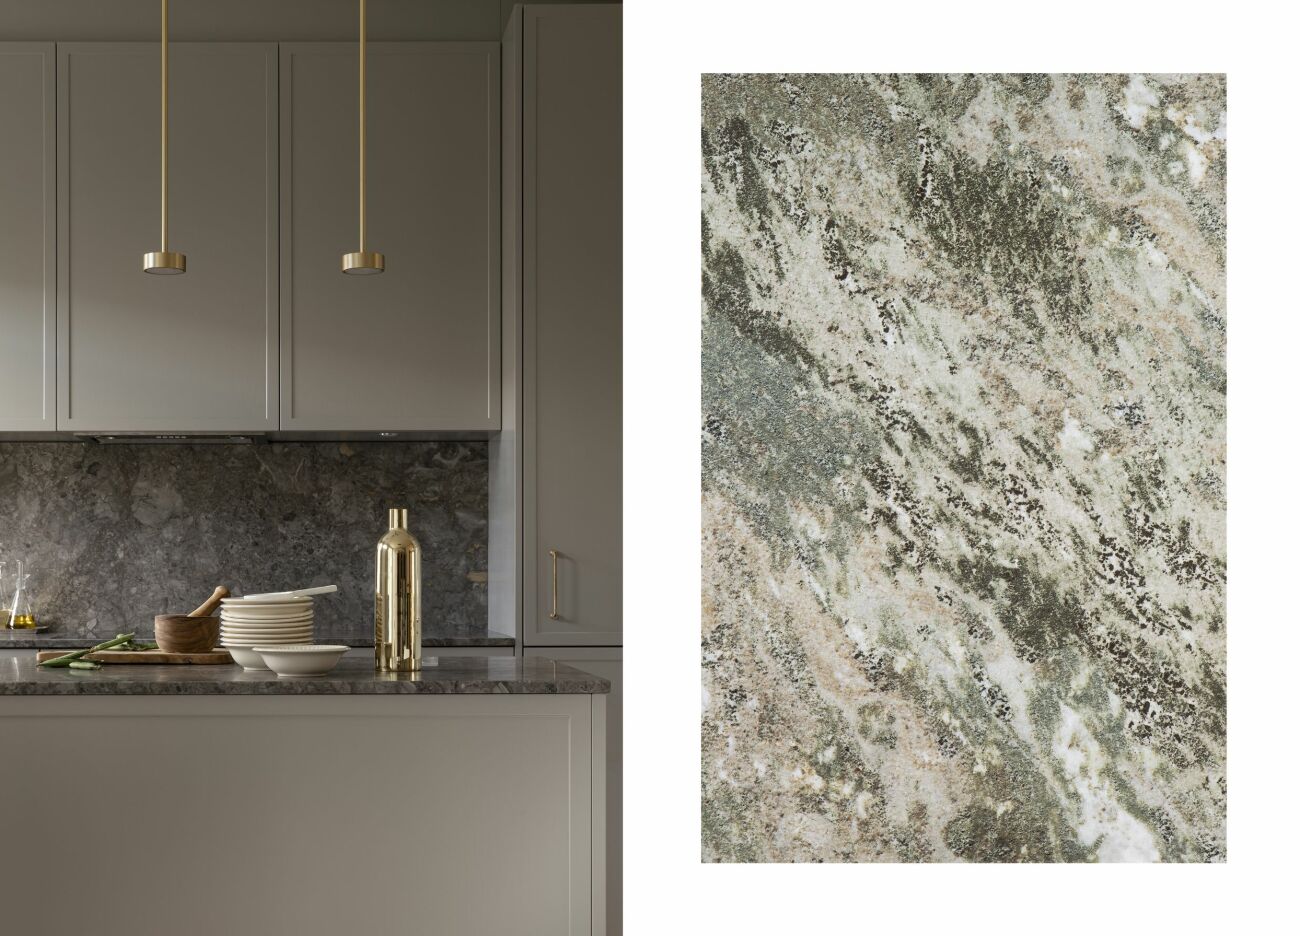 Till vänster: Kök, Contemporary Atelier, färg Klippa, pris vid förfrågan, Kvänum
Till höger: Granitkeramik för golv och vägg, M66 Kolmården, pris 995 kr/m², Bricmate